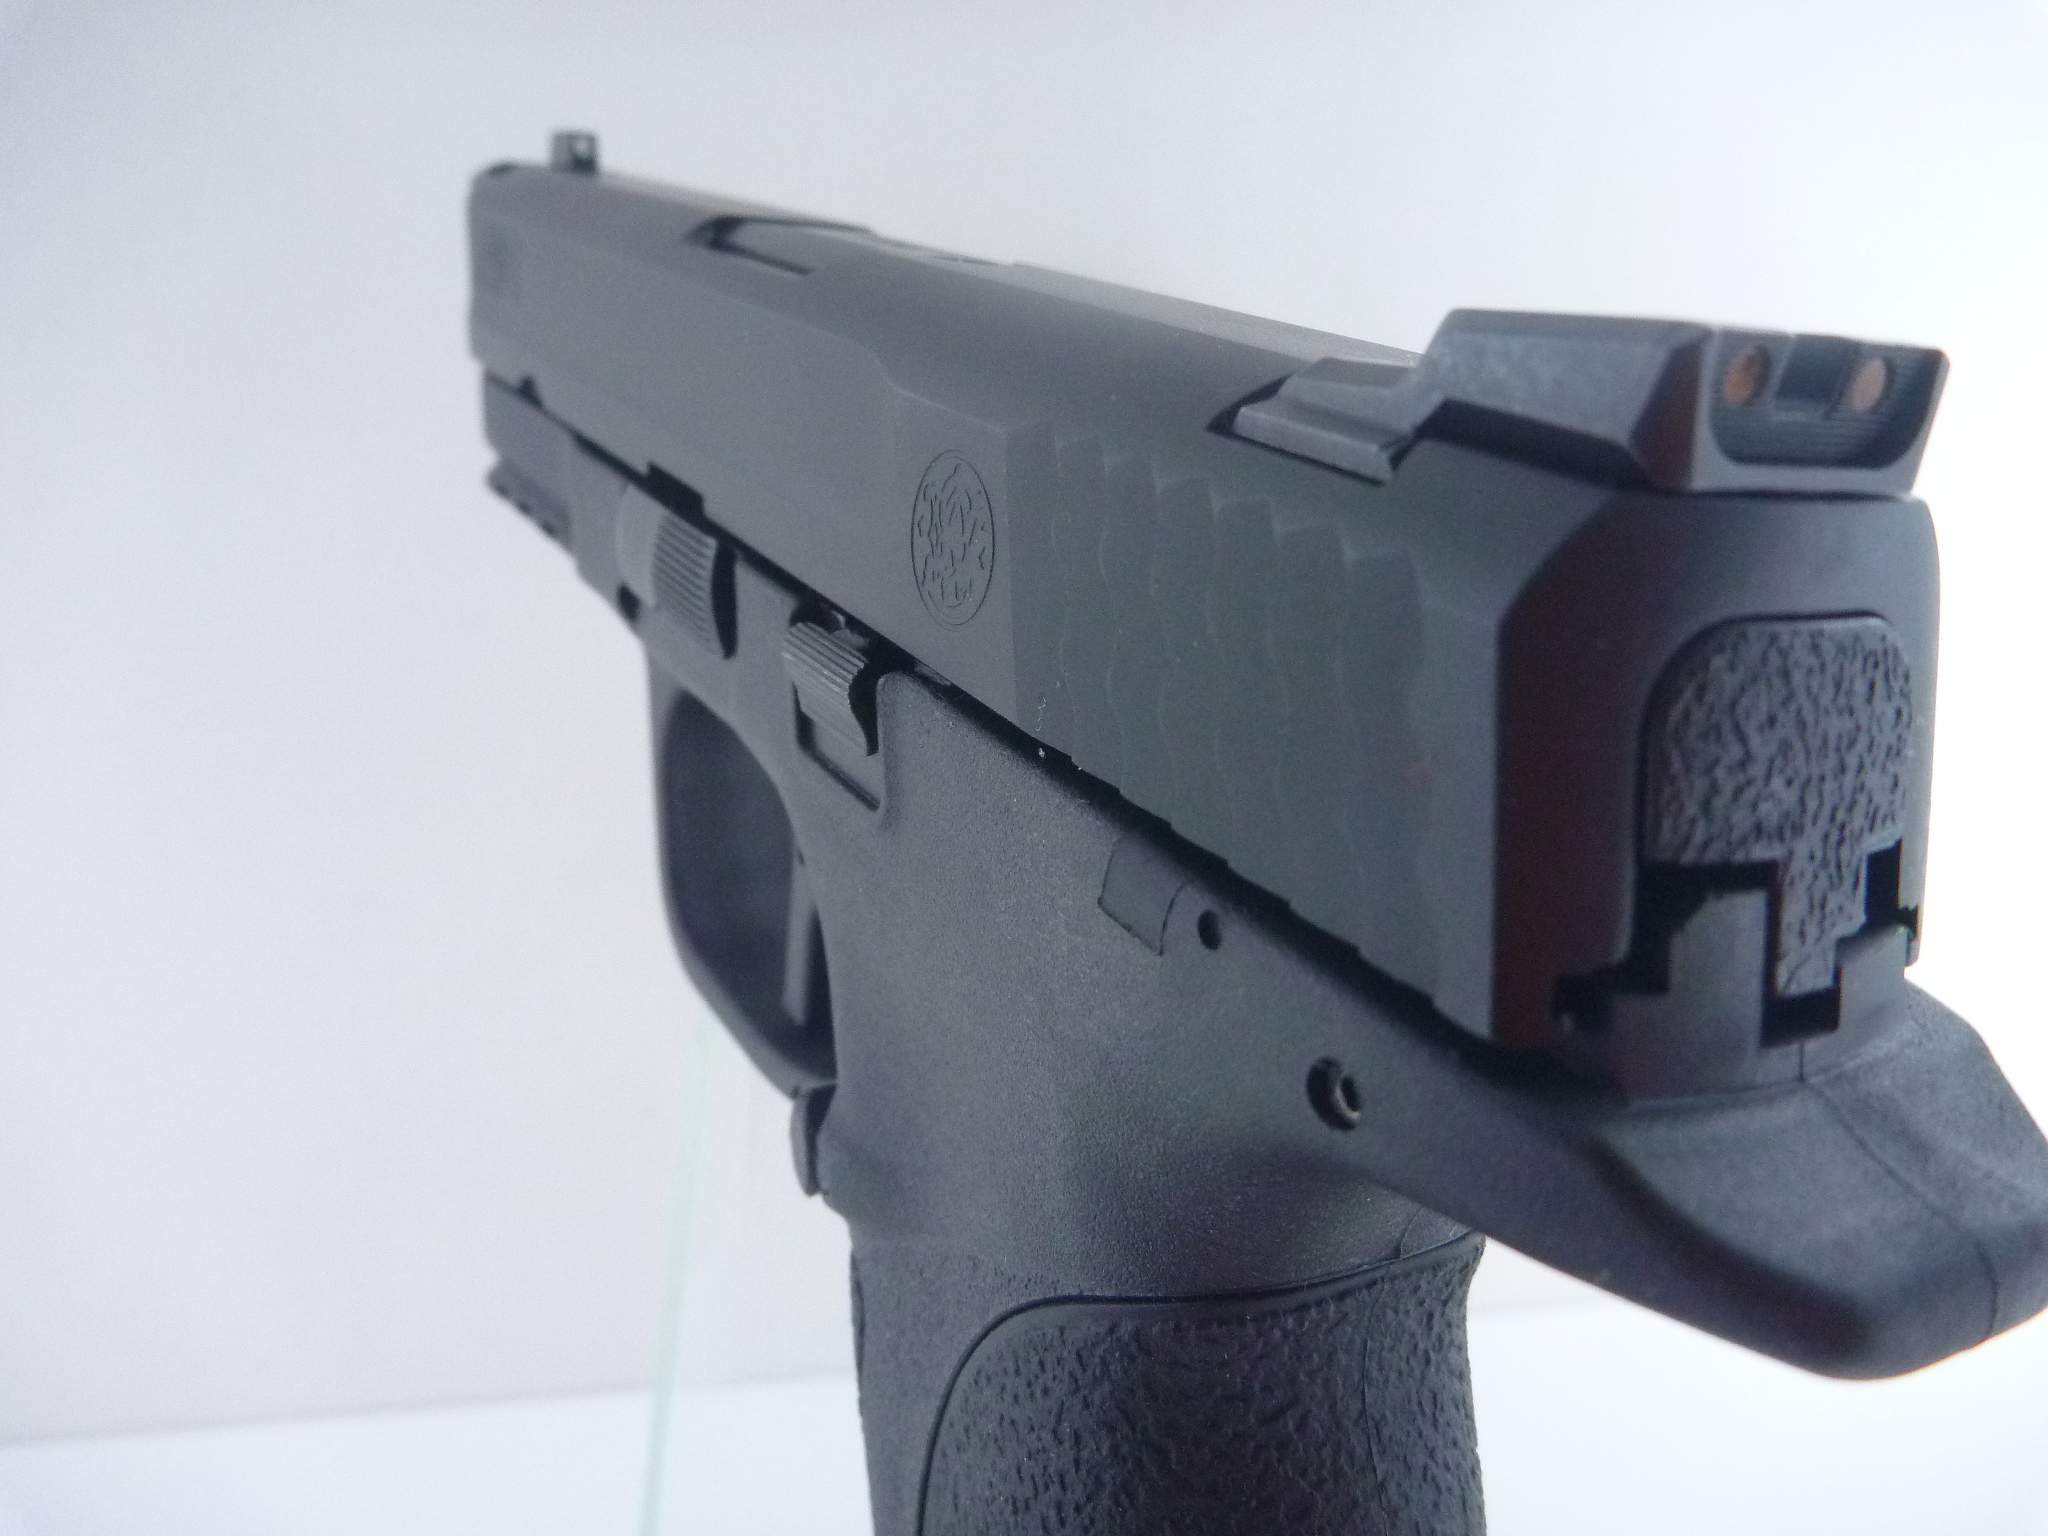 Smith & Wesson M&P9, cal. 9mm Para (état de neuf)